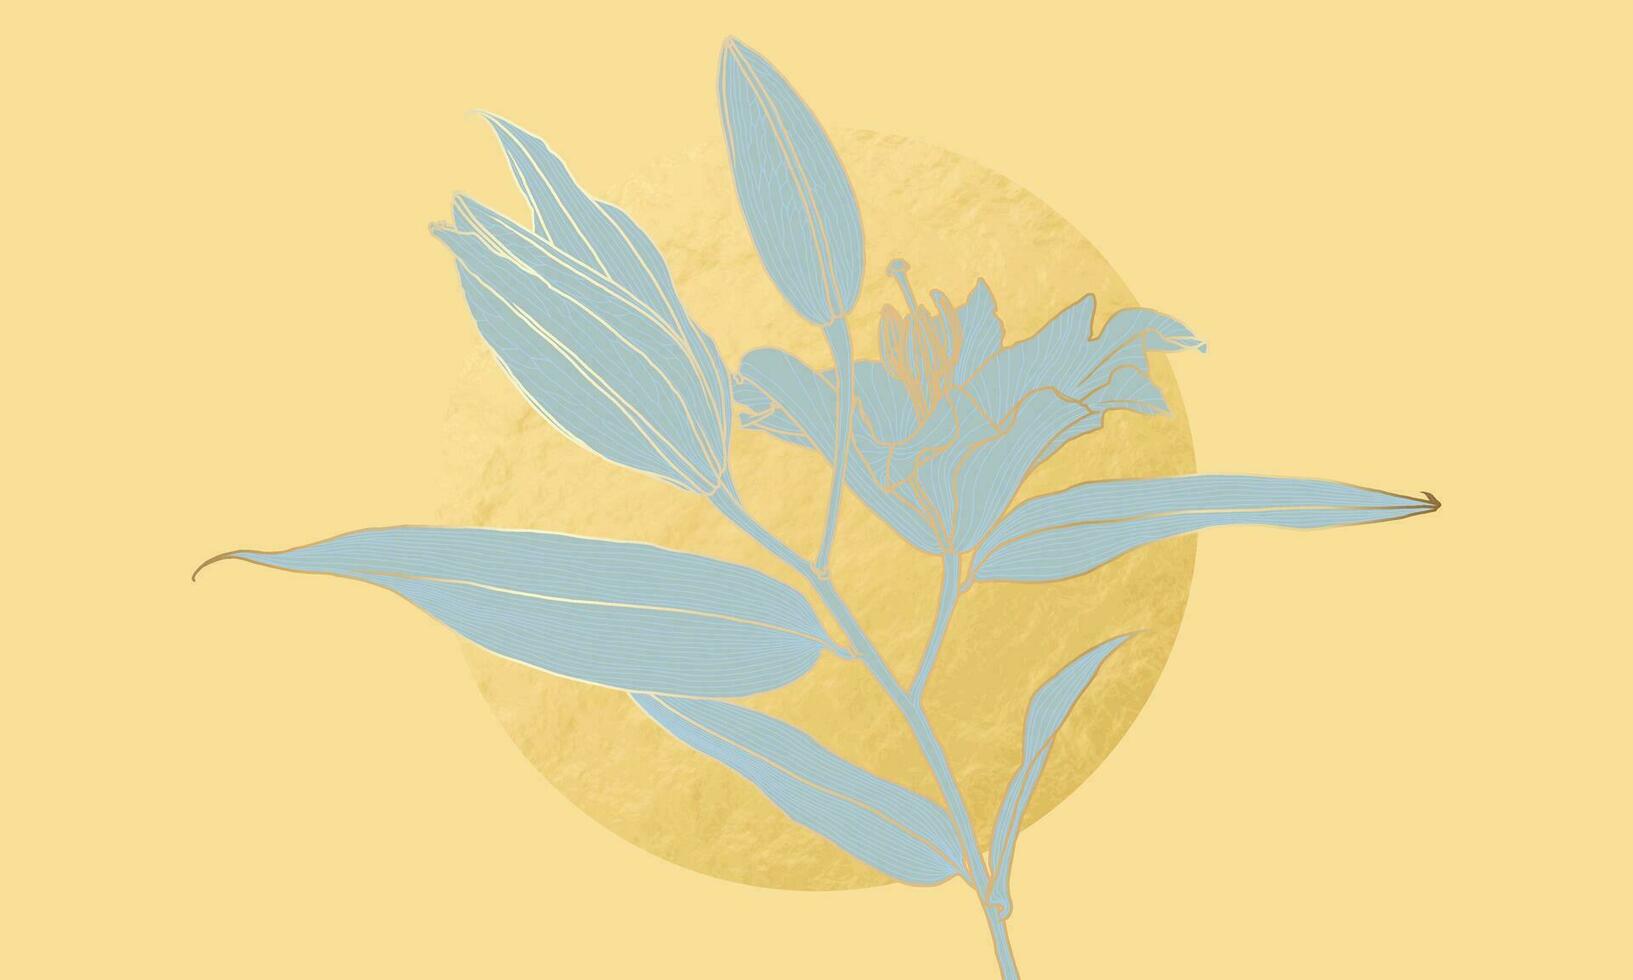 luxuriös Lilie Blume im Kunst Deko Stil Licht Blau Silhouette mit Gold Gliederung und Gold vereiteln Kreis auf Gelb. Hintergrund Design zum drucken, Poster, Abdeckung, Banner, Einladung, Postkarte. vektor